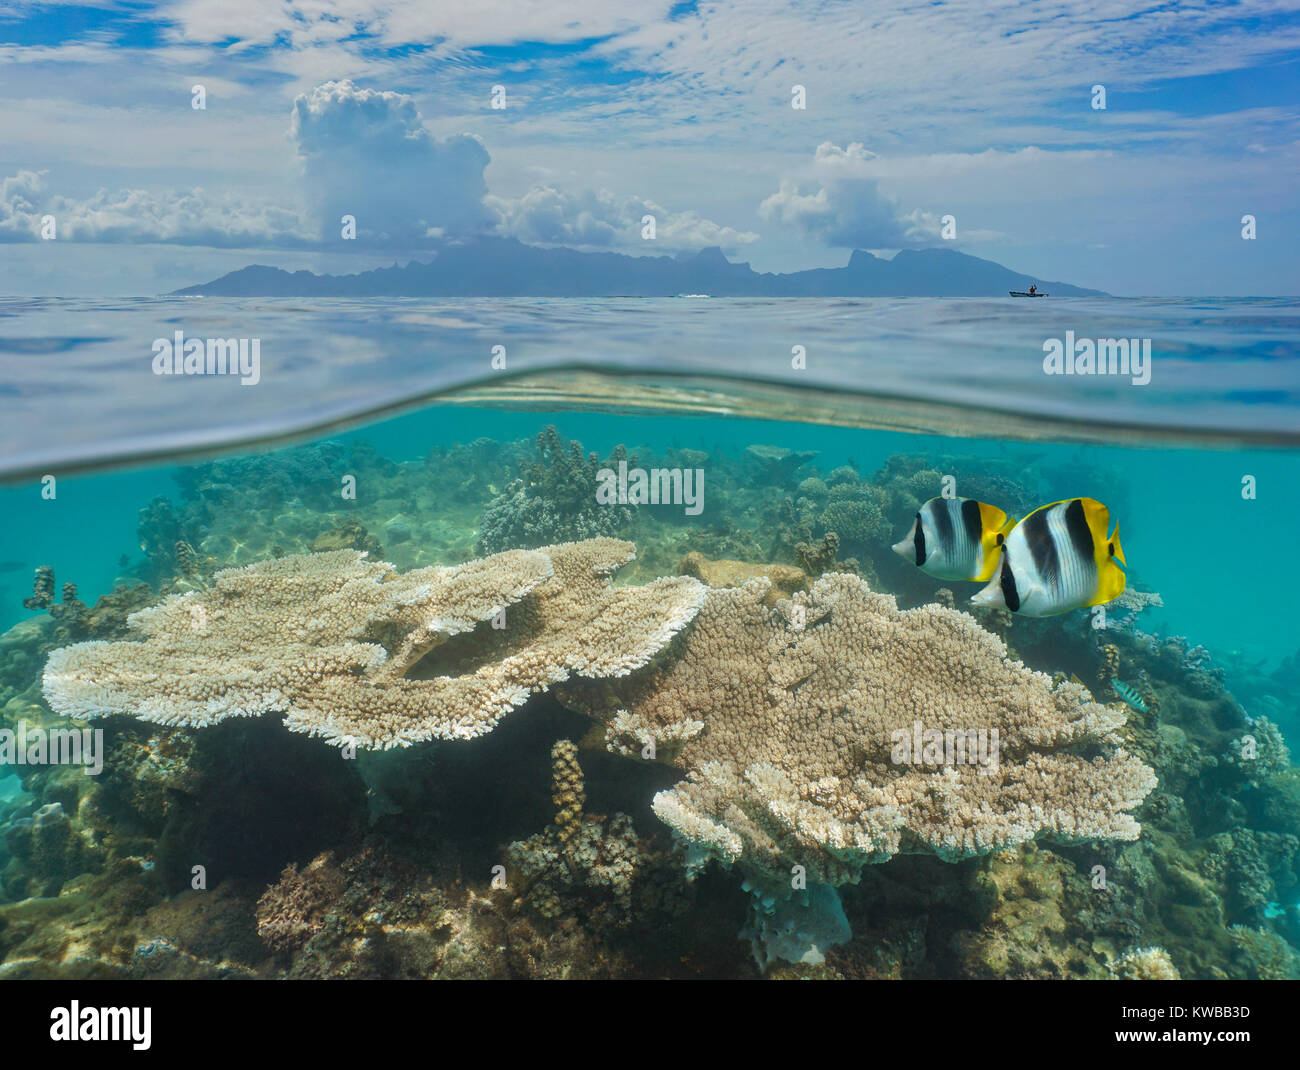 Über und unter der Meeresoberfläche Französisch Polynesien Moorea Insel am Horizont mit Korallen und Fische unter Wasser, von der Lagune von Tahiti gesehen, Pazifischer Ozean Stockfoto